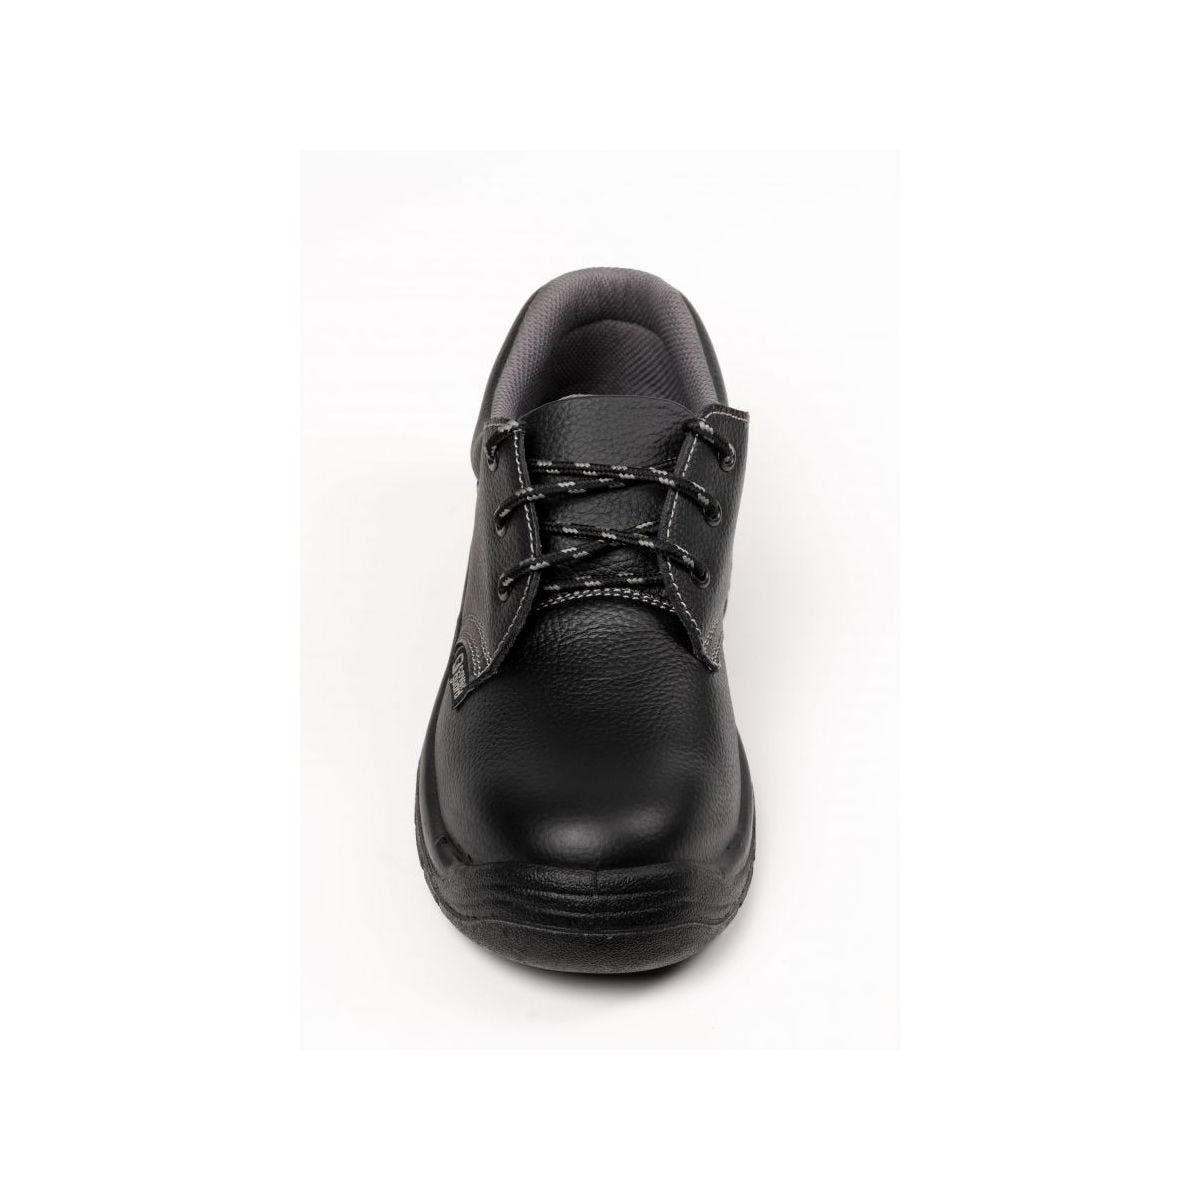 Chaussures de sécurité basses AGATE II S3 Noir - Coverguard - Taille 49 3